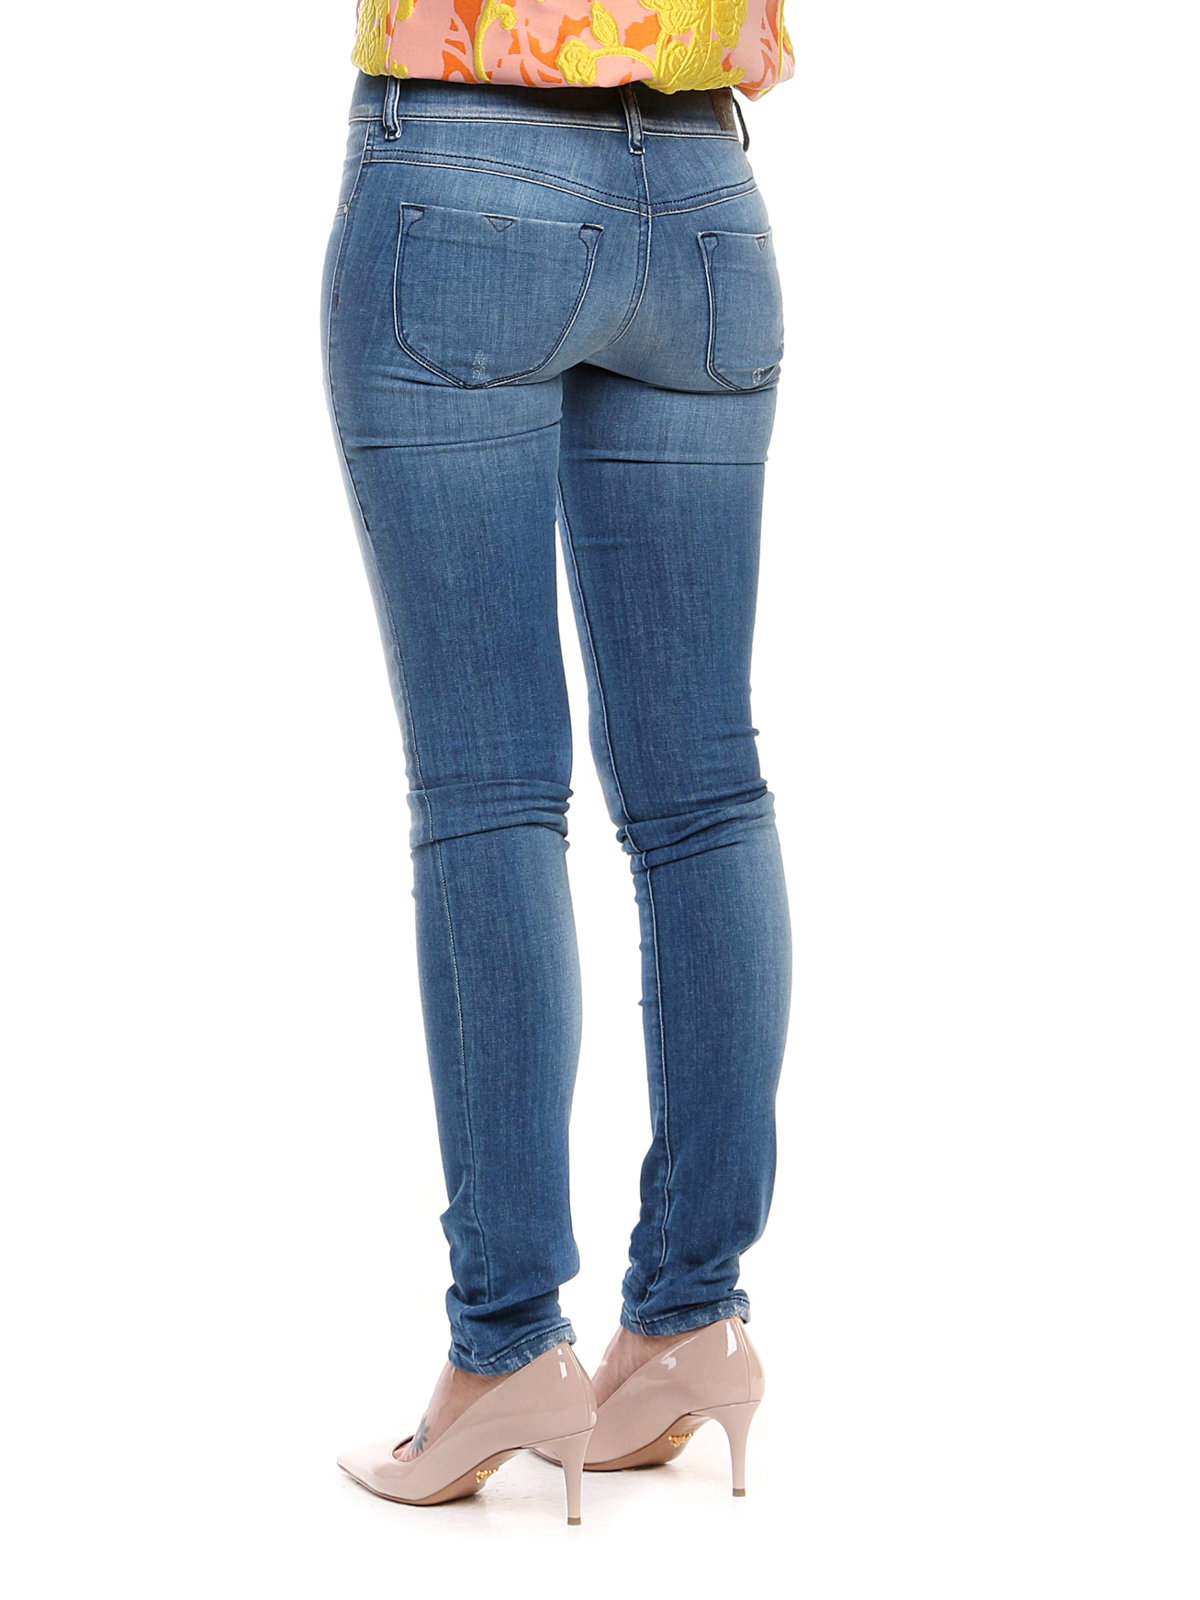 je bent gereedschap James Dyson Skinny jeans Diesel - Livier jeans - CQLP0664I01 | Shop online at iKRIX